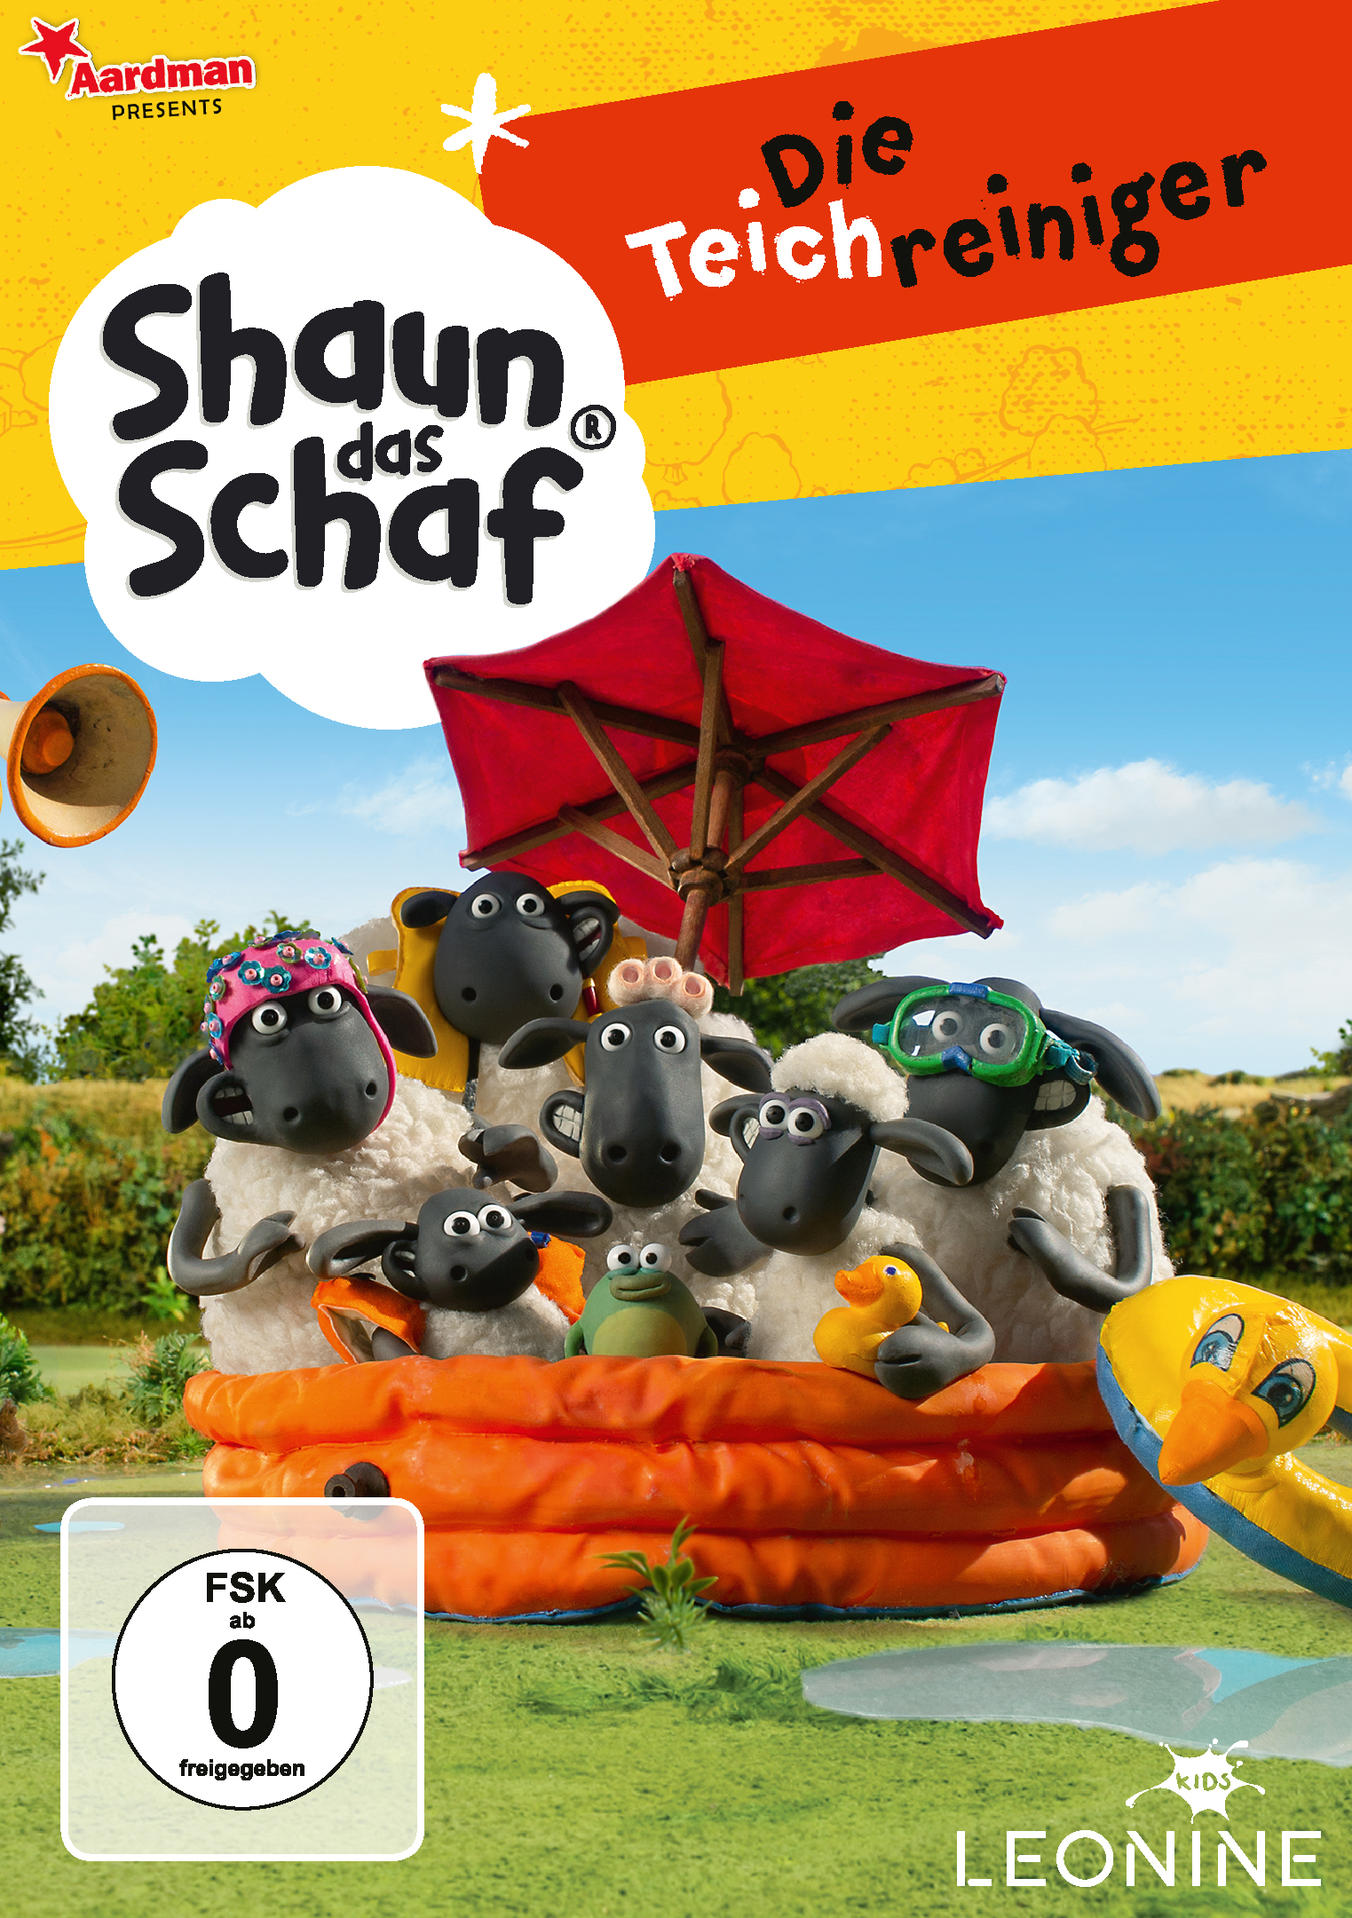 Vol. - das Teichreiniger 6, DVD Schaf (Staffel Die 1) Shaun